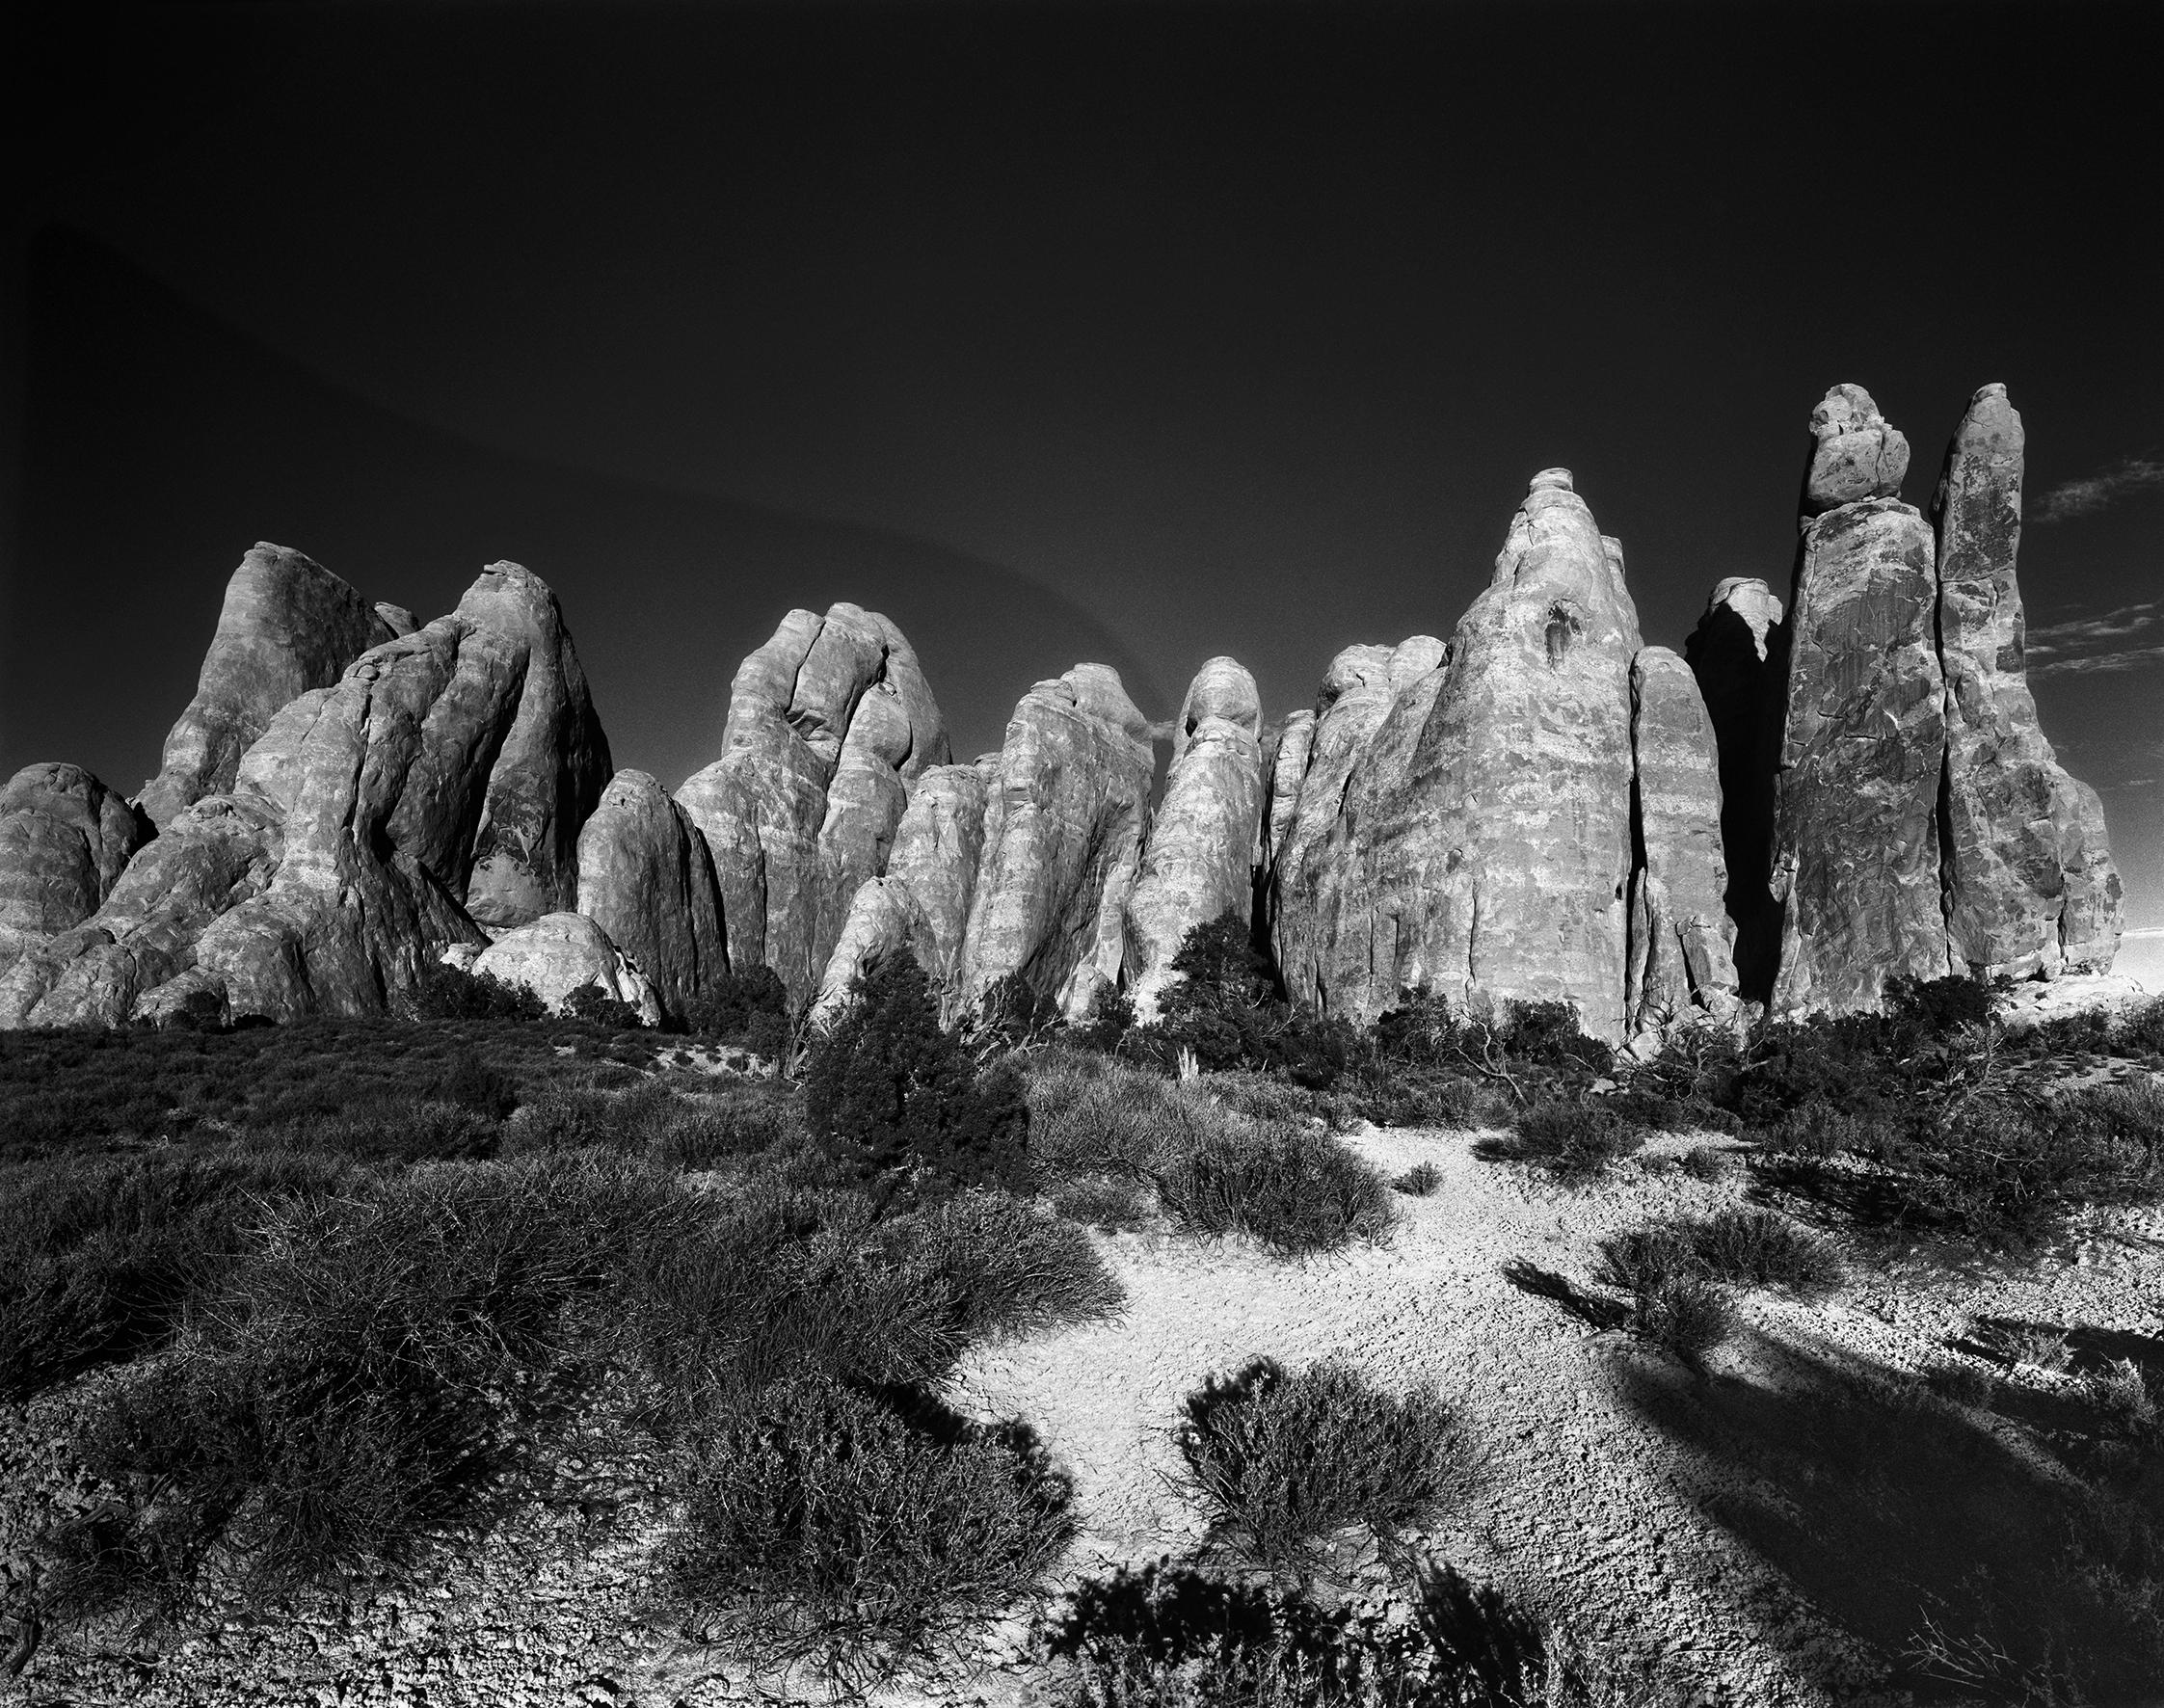 Ugne Pouwell Landscape Photograph – Sand Dune Arches – Schwarz-Weiß-Bergbögenfotografie, limitierte Auflage von 20 Stück